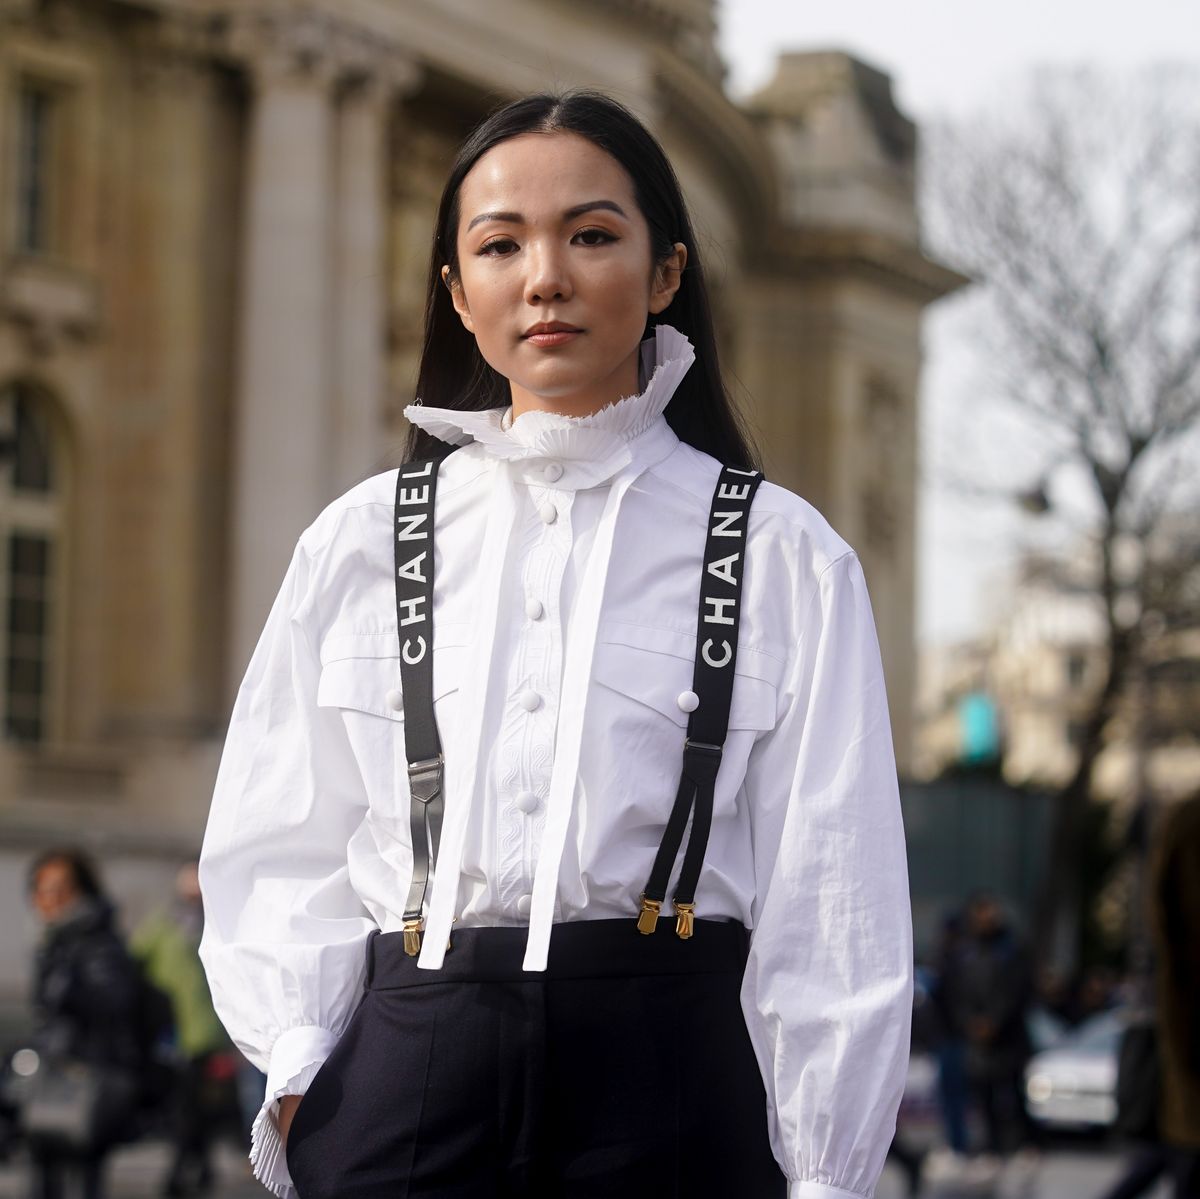 Dormitorio apuntalar heroína Zara vende la camisa blanca romántica más buscada de París